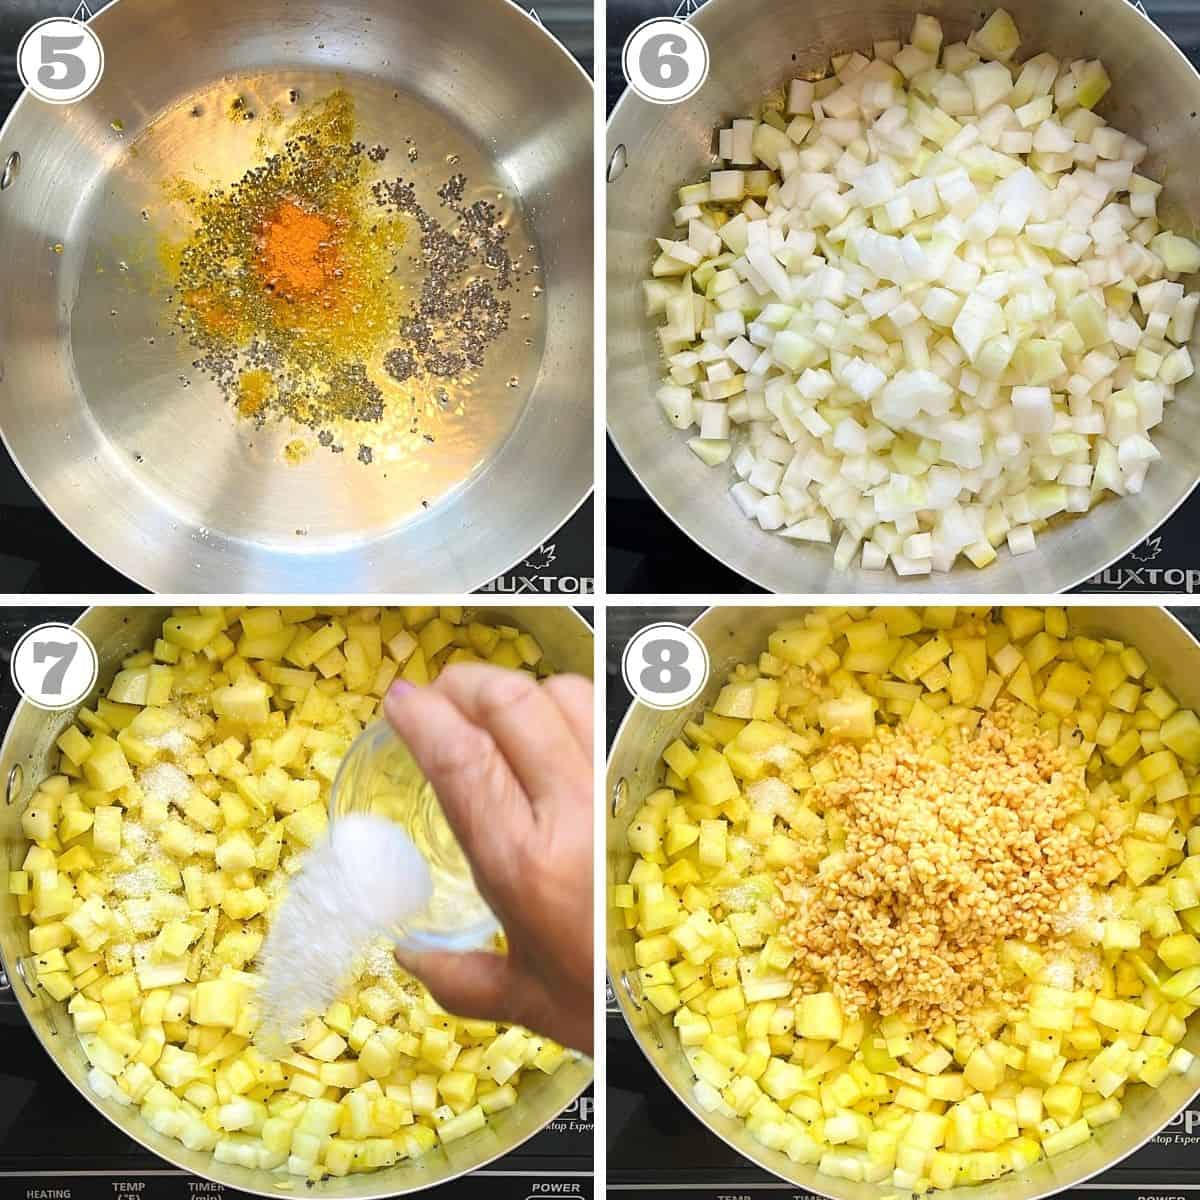 photos five through eight showing how to stir fry kohlrabi 